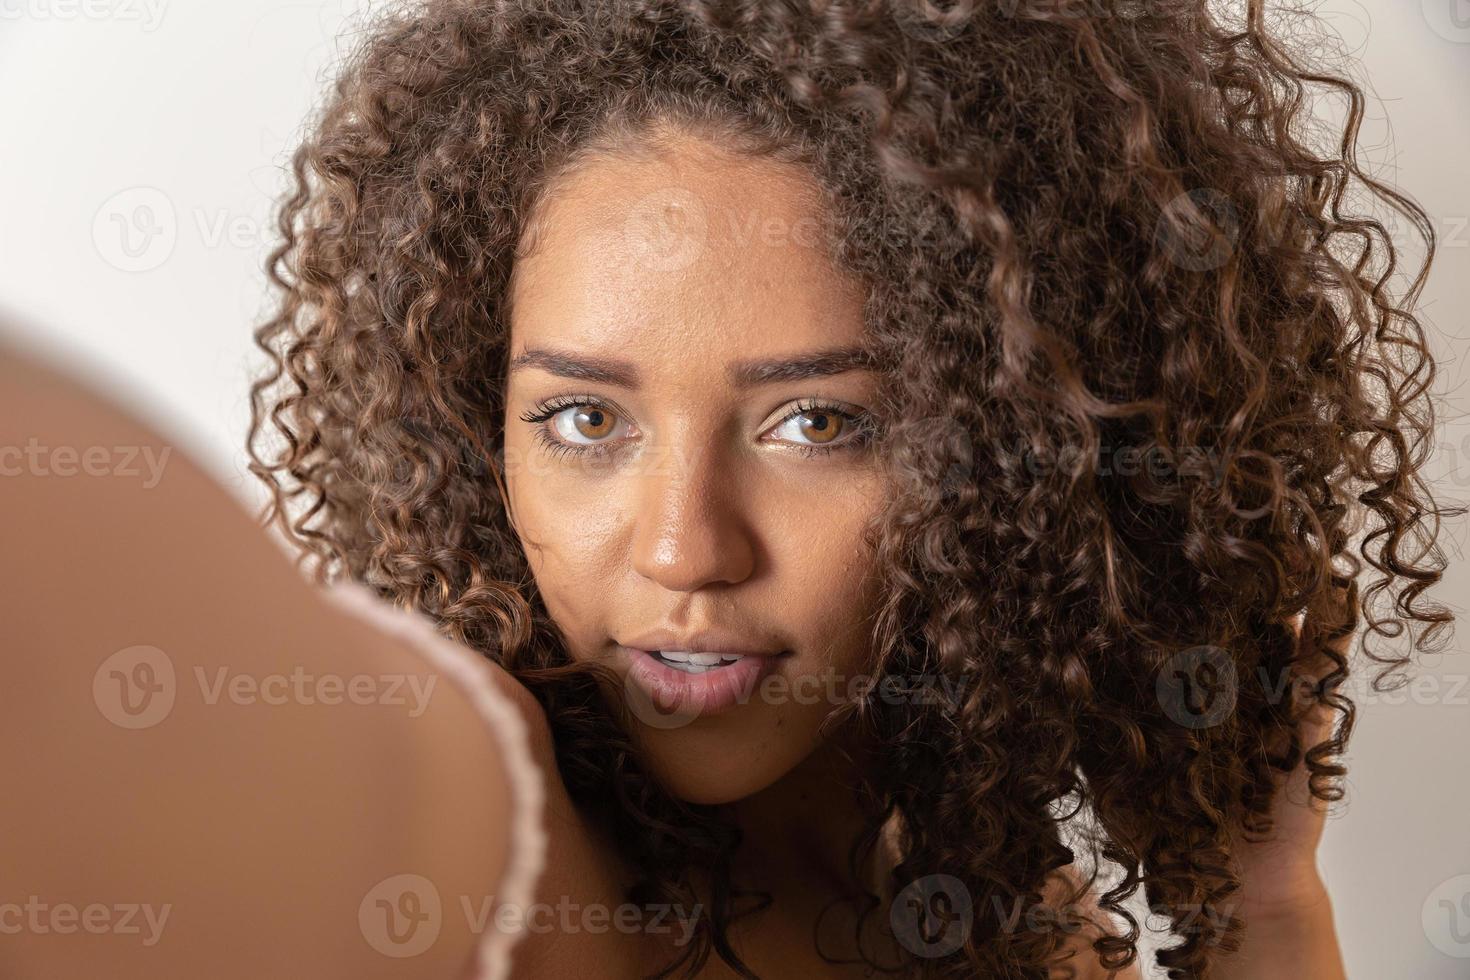 selfie retrato de mujer negra alegre en estudio con pelo rizado foto